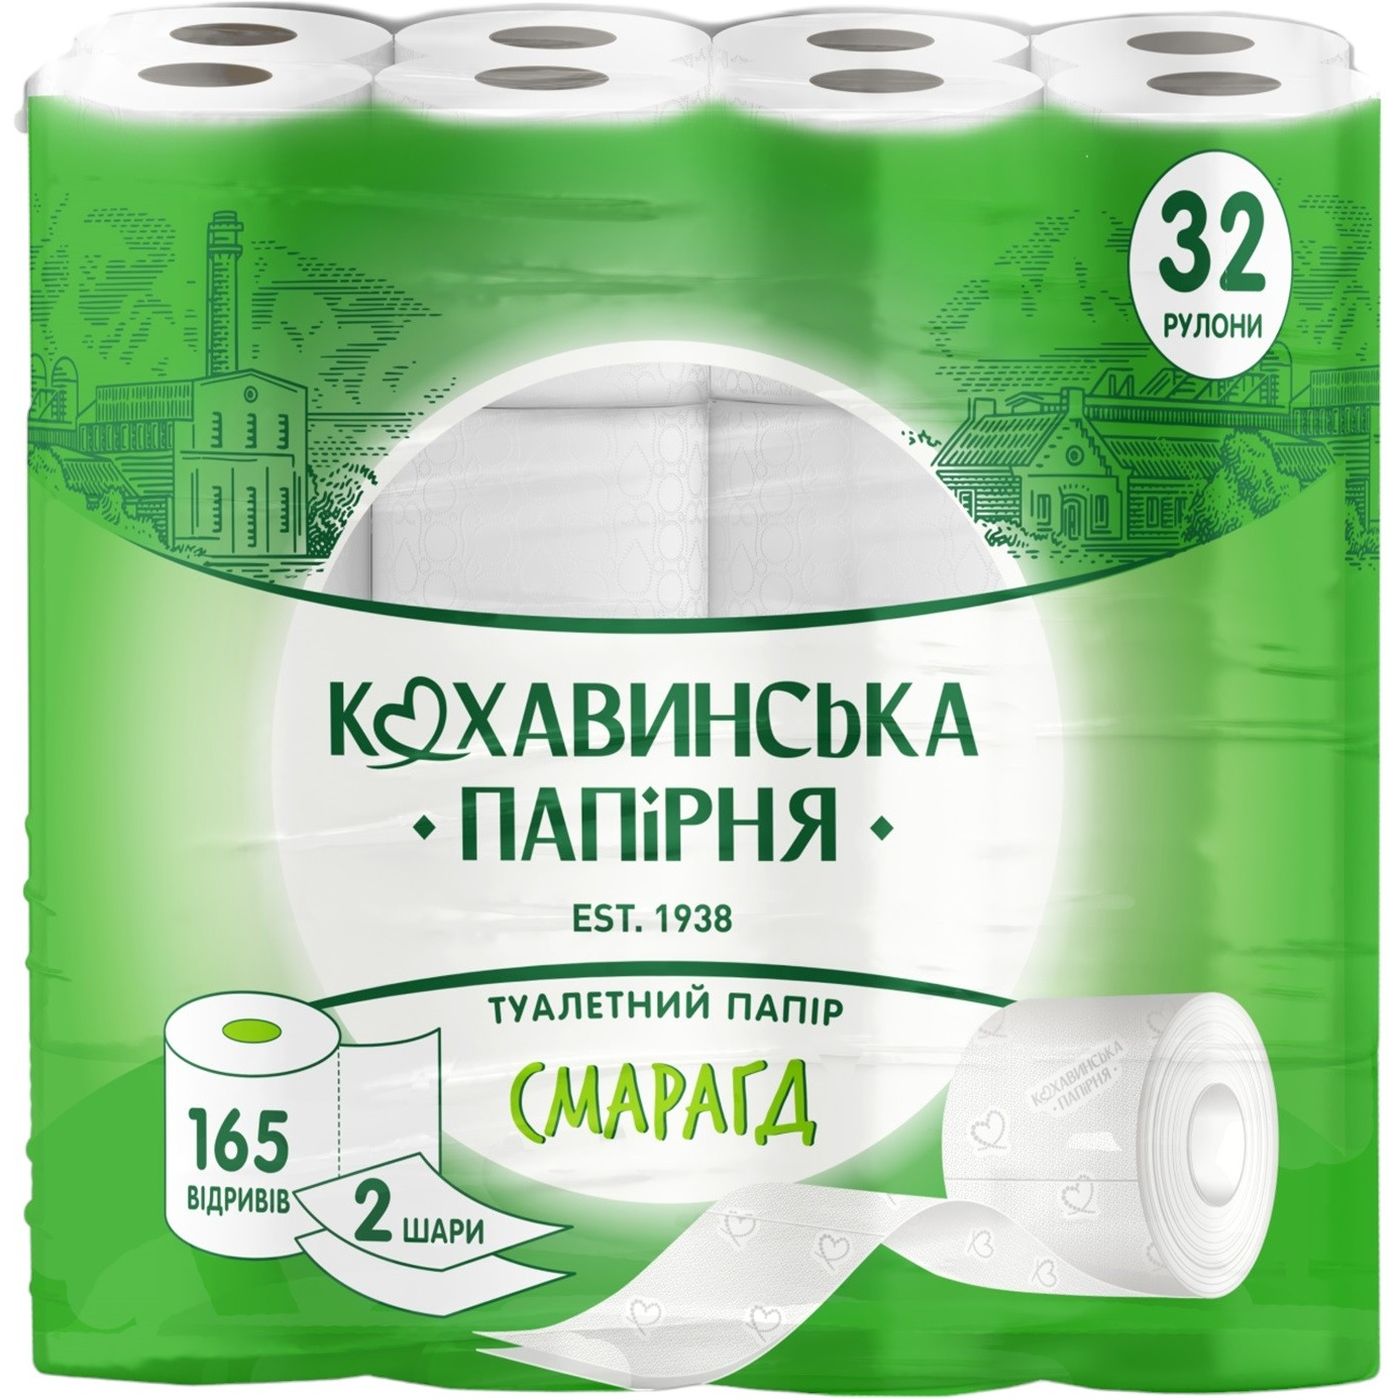 Туалетний папір Кохавинська папірня Срібло 3 шари 170 відривів 4 шт. - фото 1